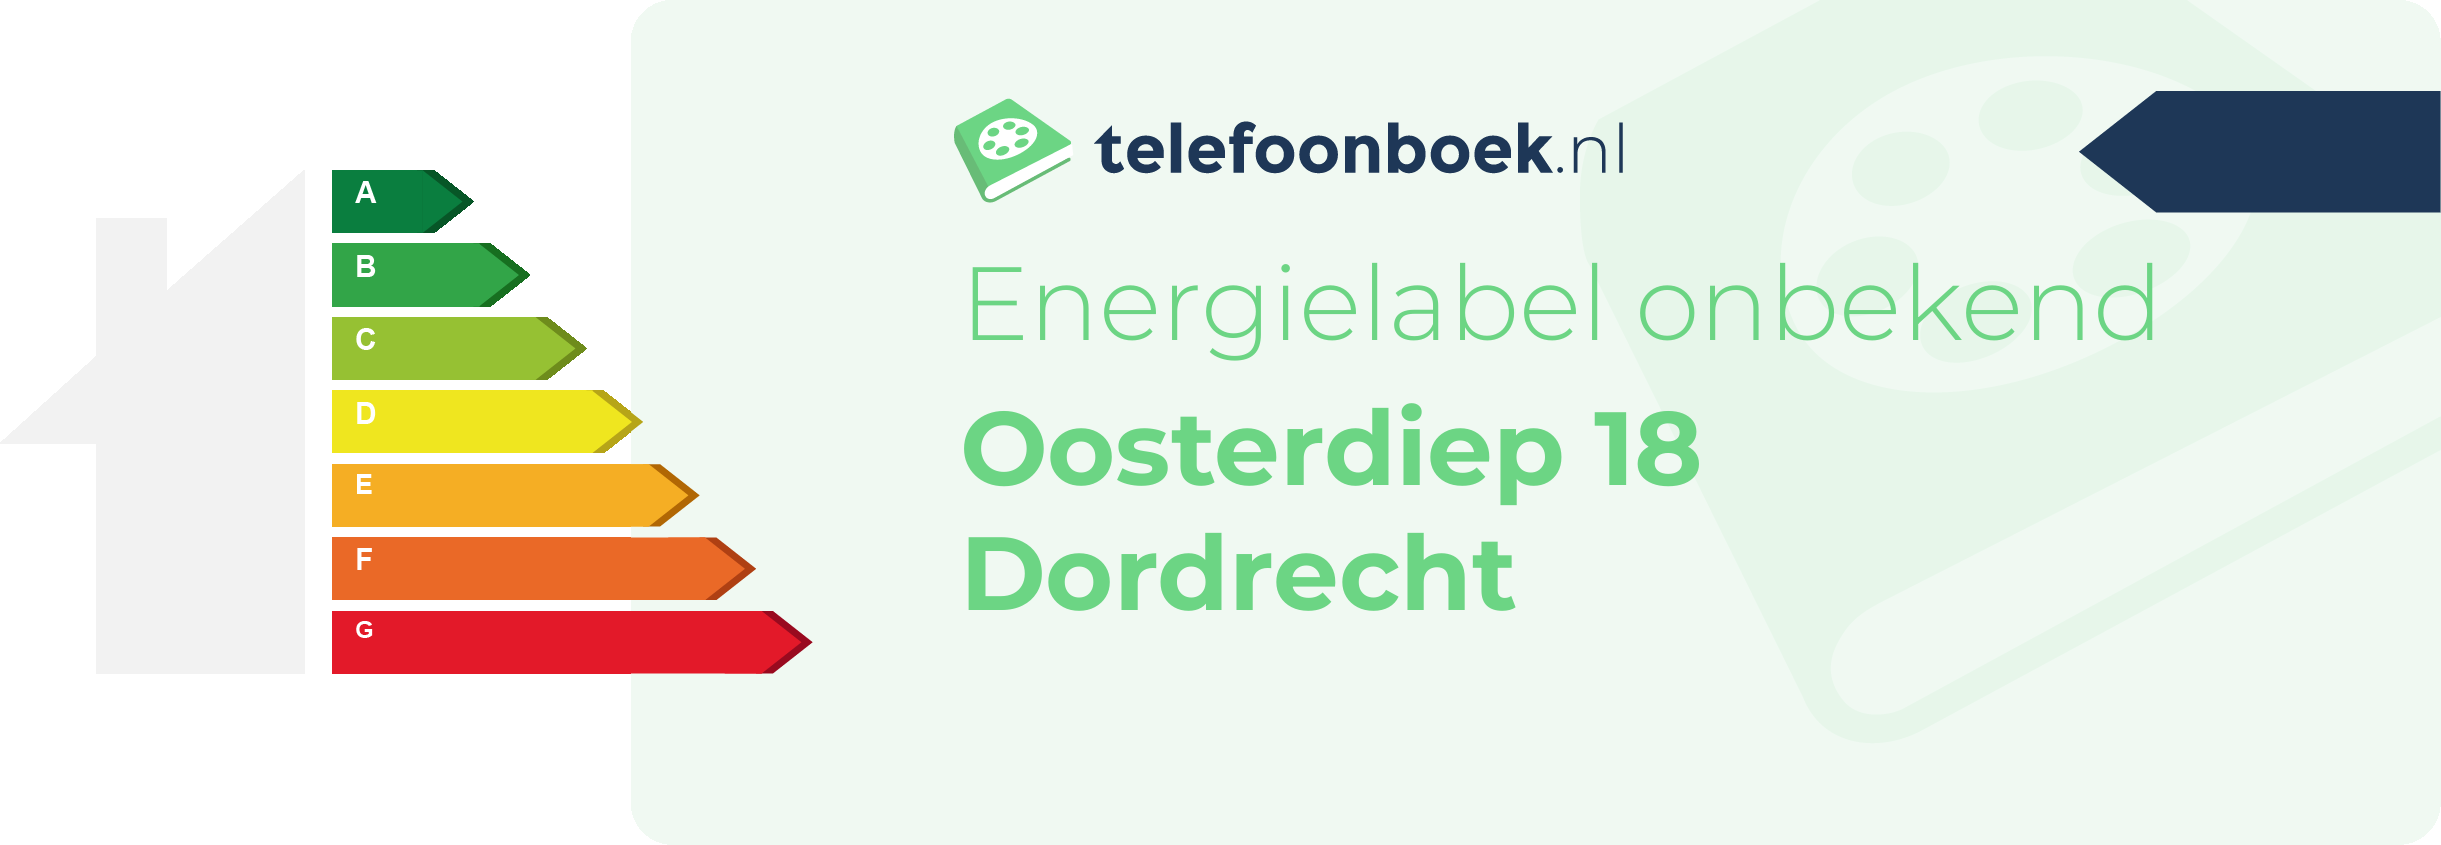 Energielabel Oosterdiep 18 Dordrecht